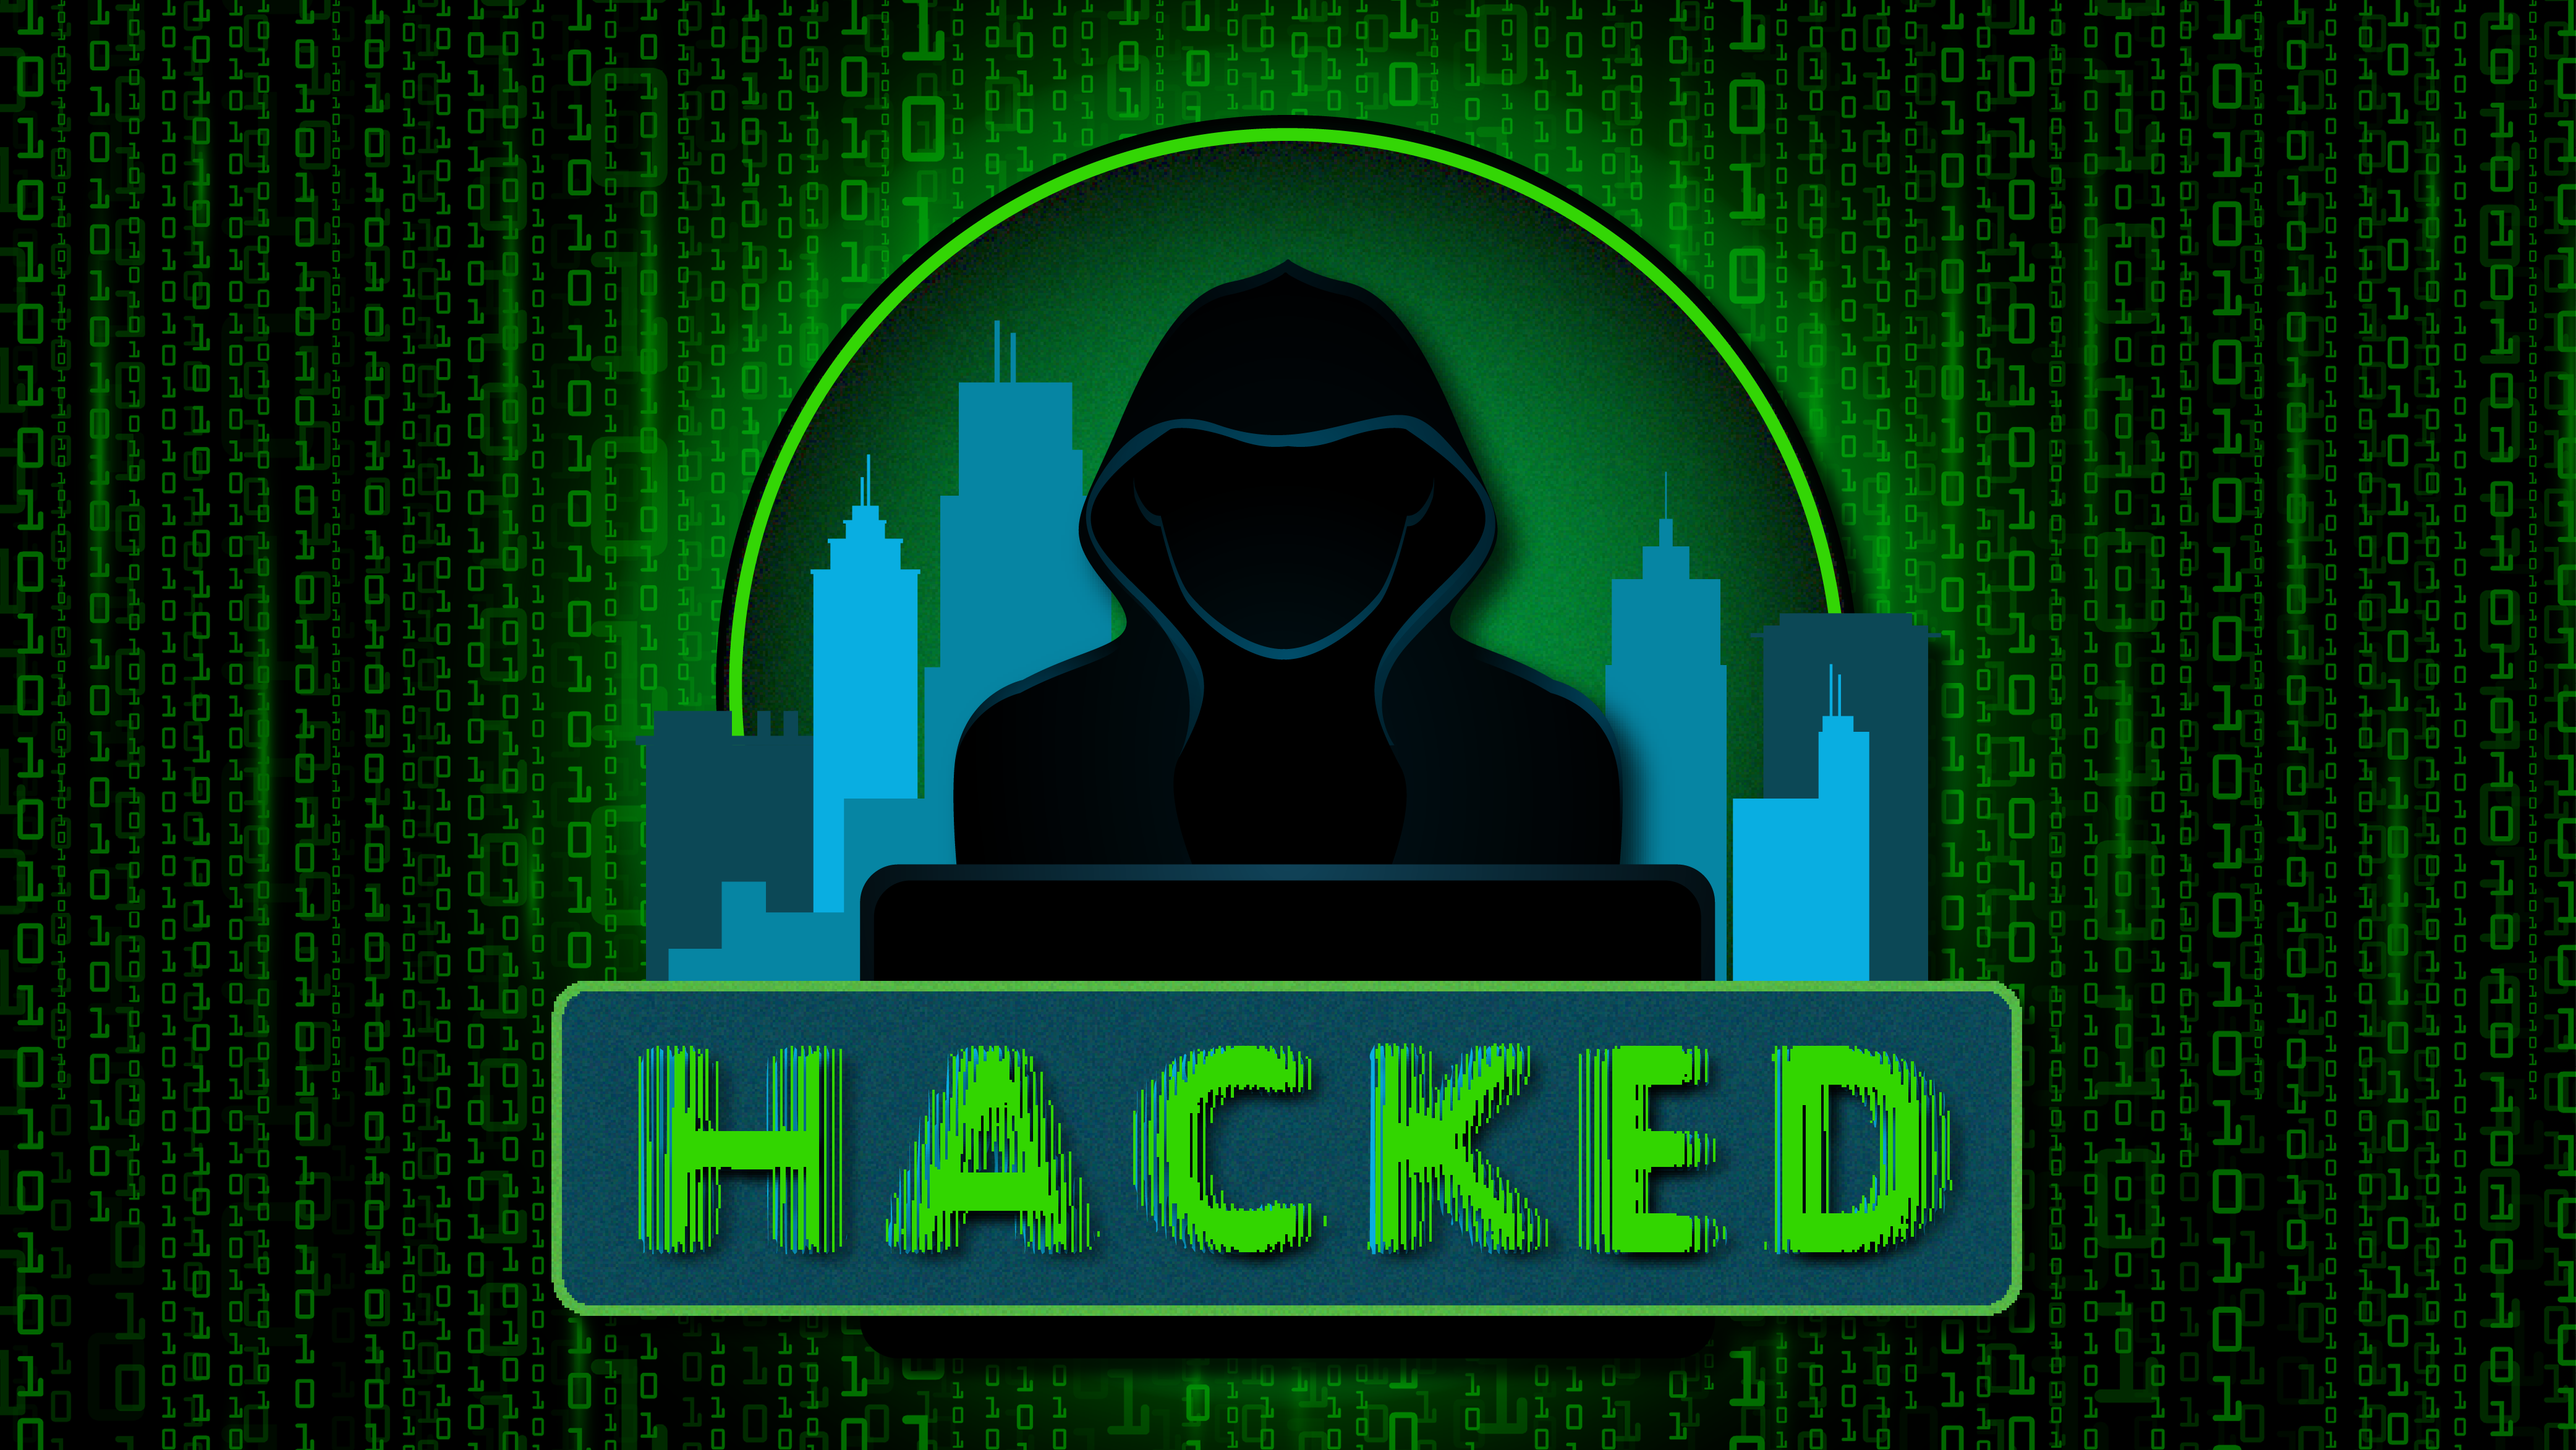 Hacked logo